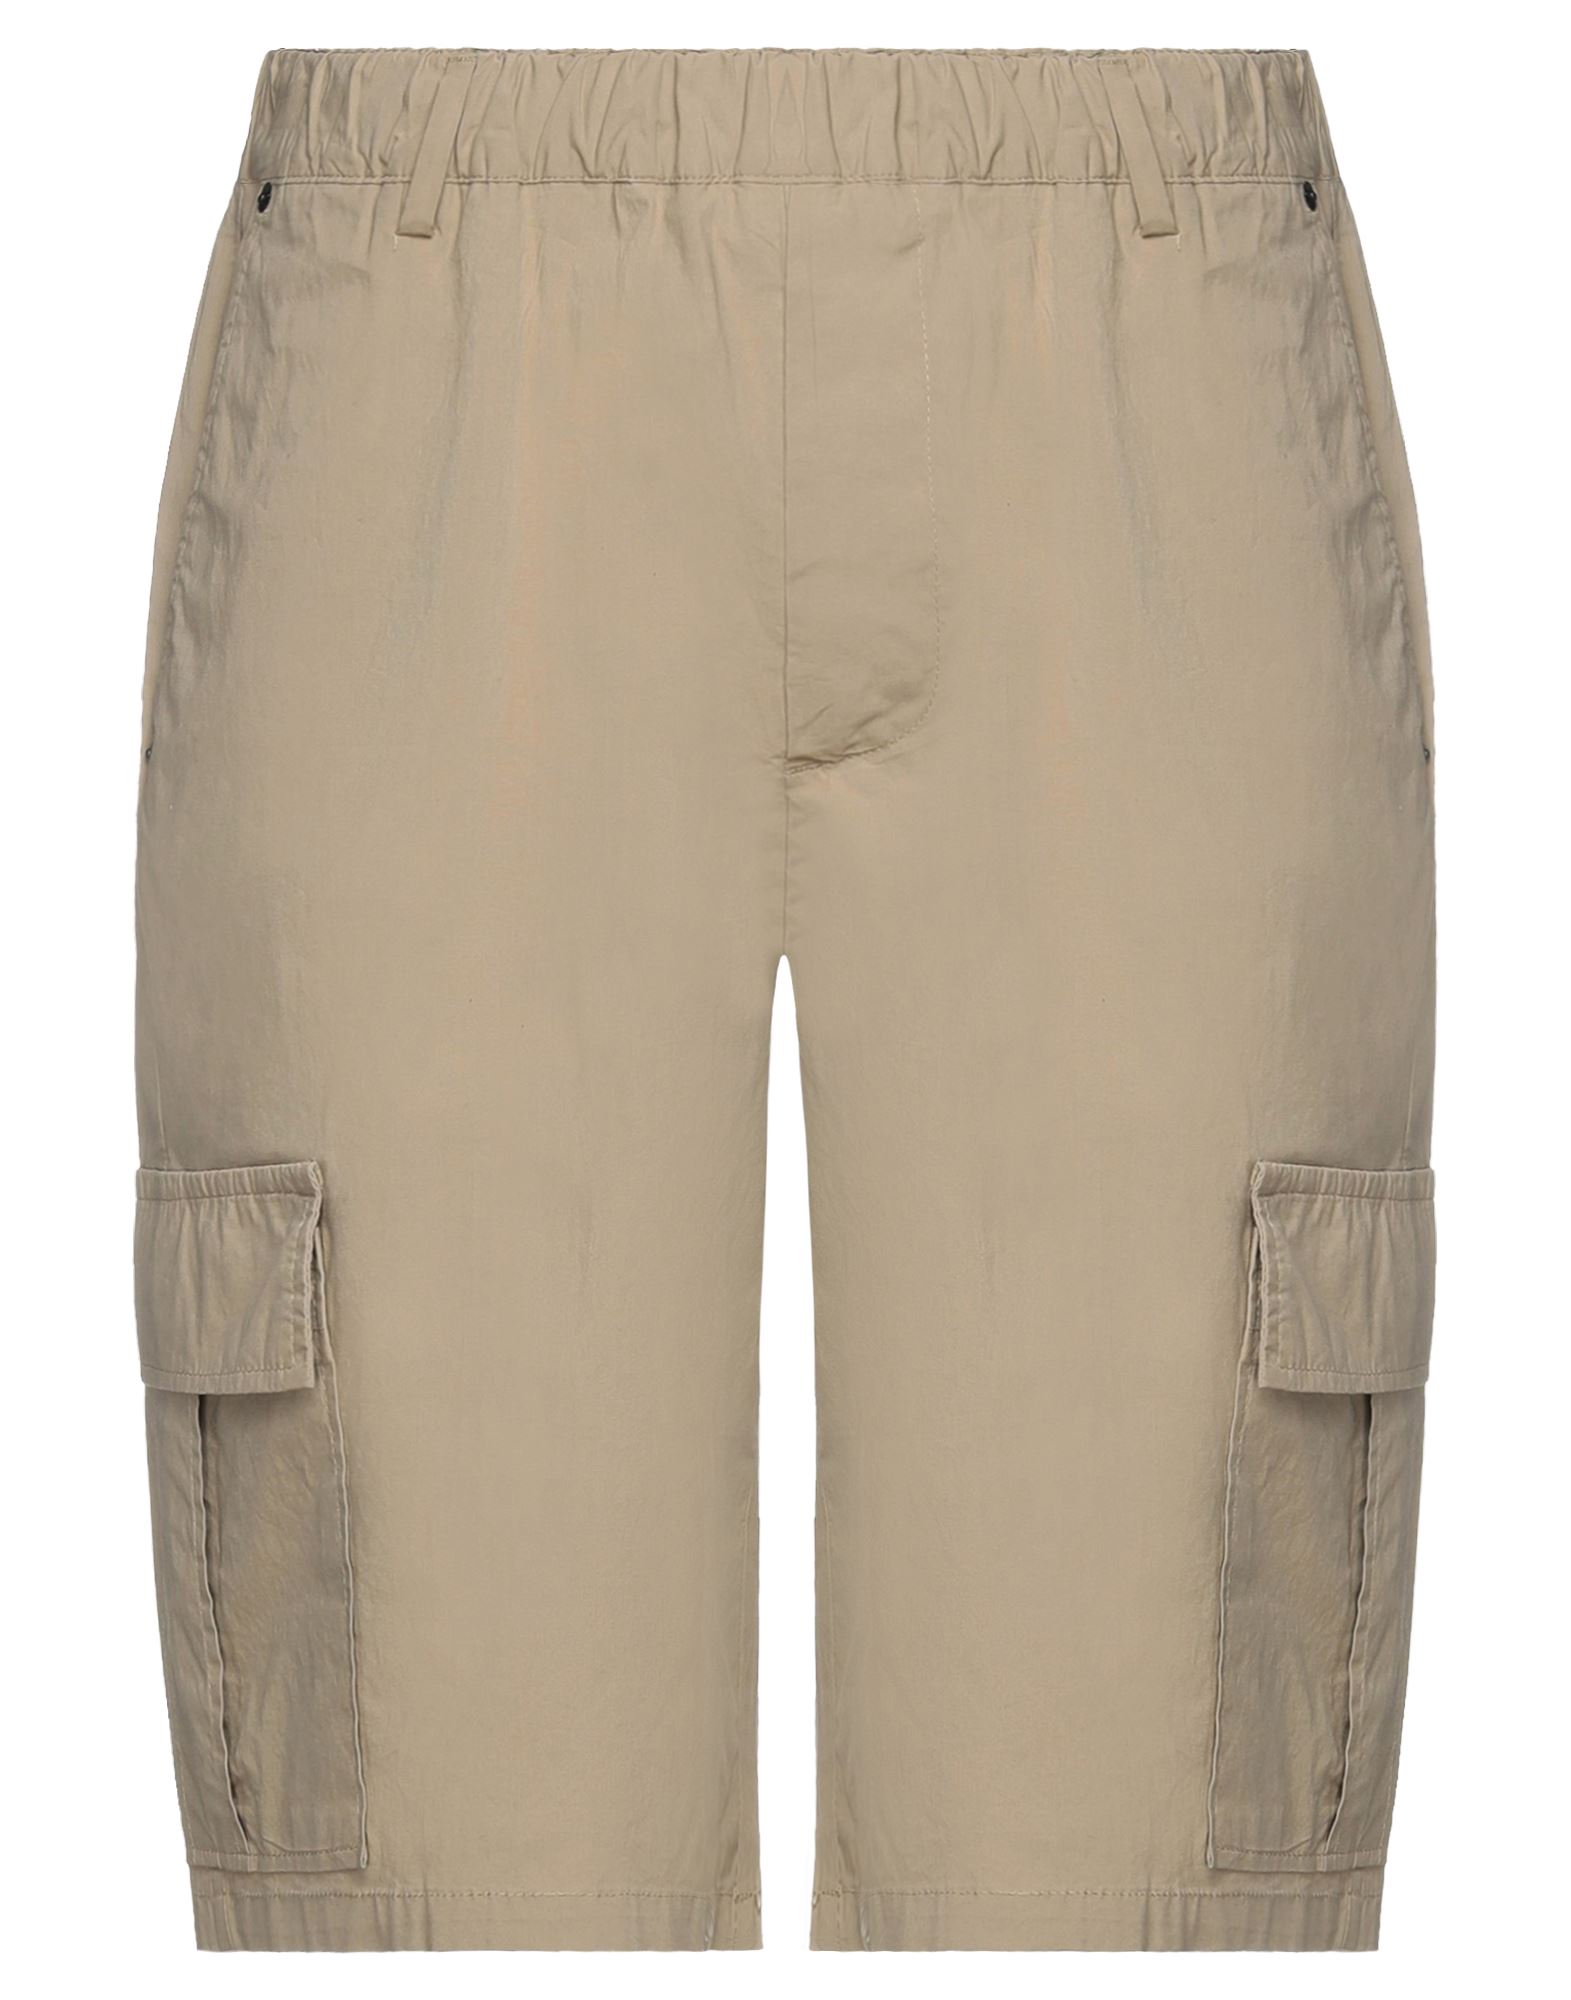 Pmds Premium Mood Denim Superior Man Shorts & Bermuda Shorts Beige Size 32 Cotton, Elastane